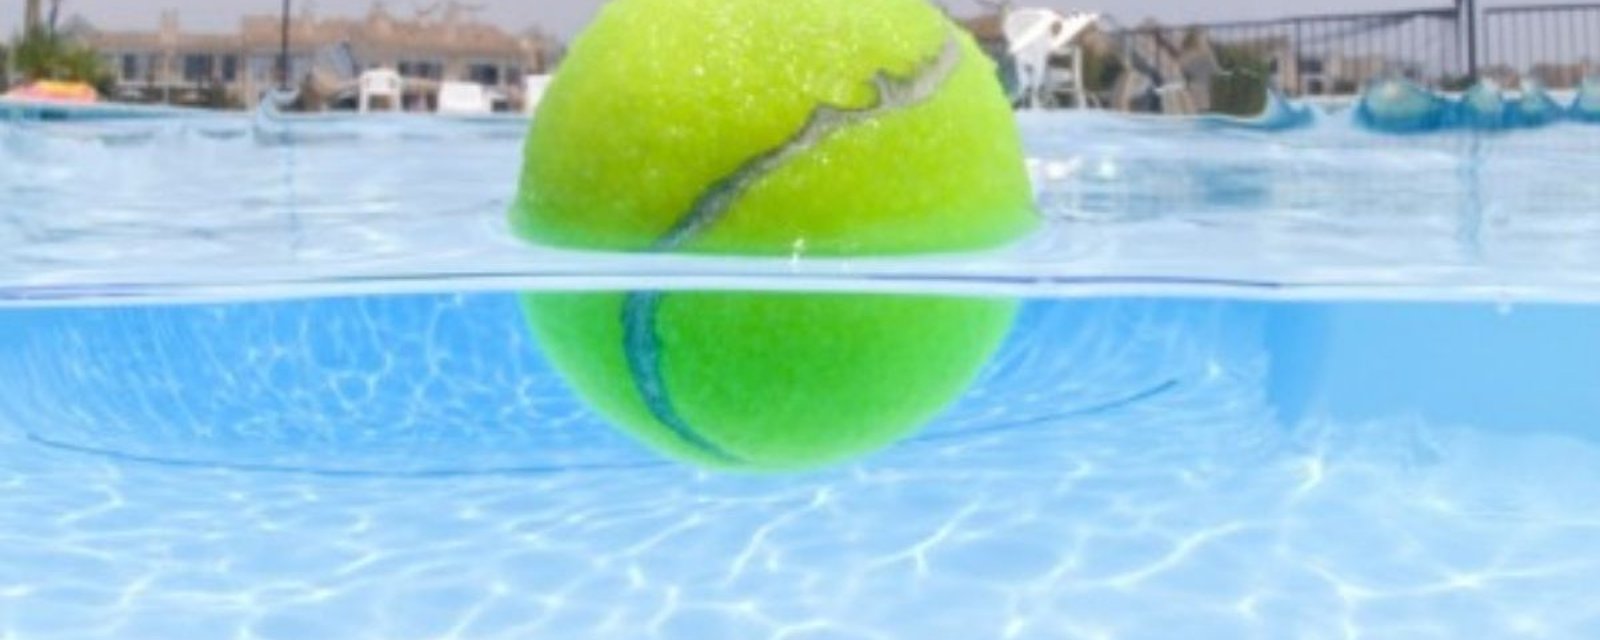 Comment nettoyer une piscine avec une balle de tennis